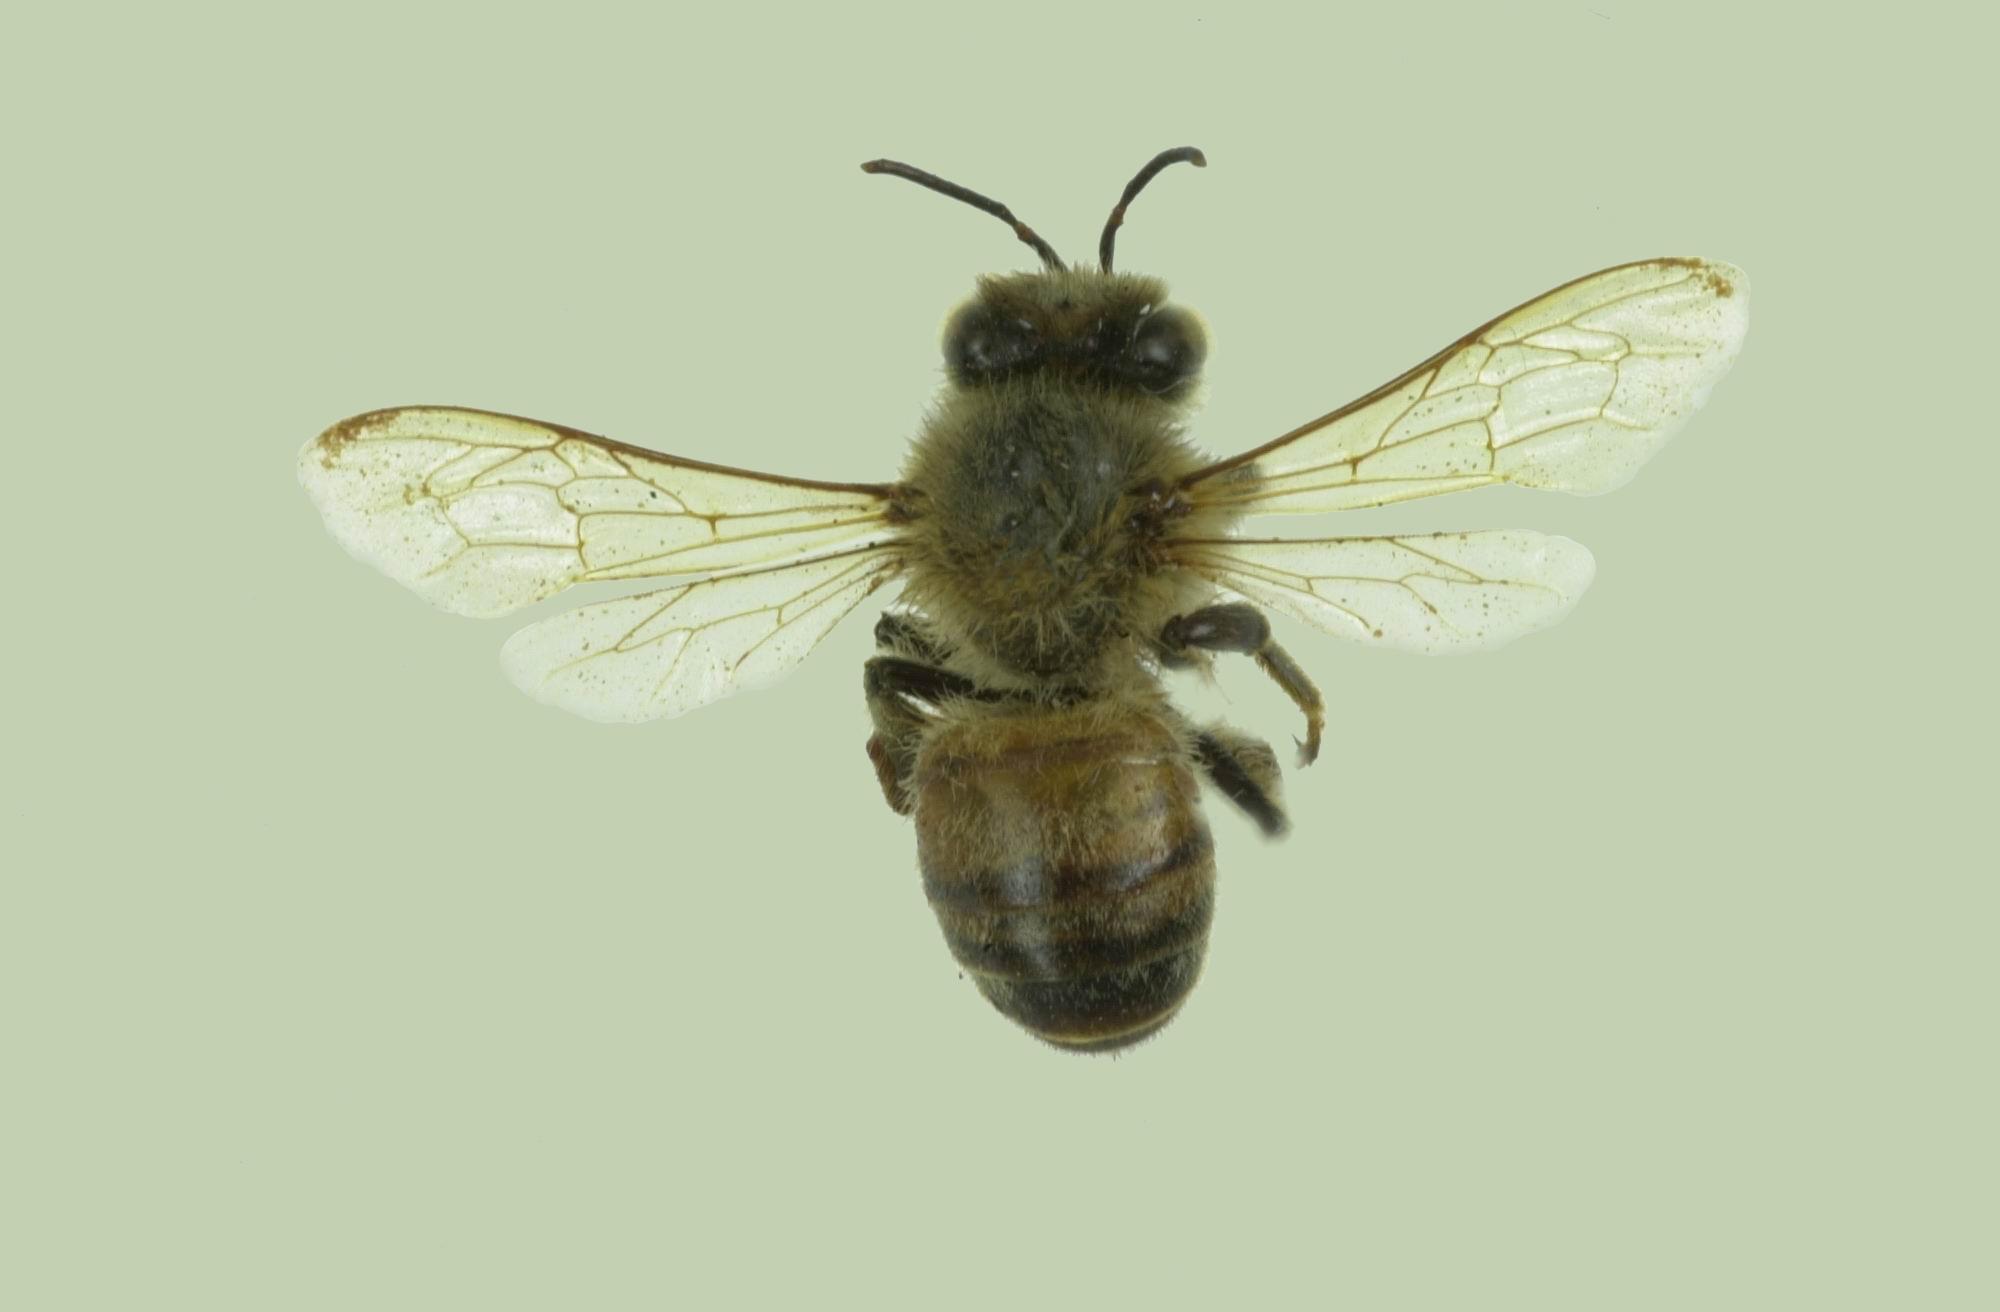 中文名稱:蜜蜂-數位典藏與學習聯合目錄